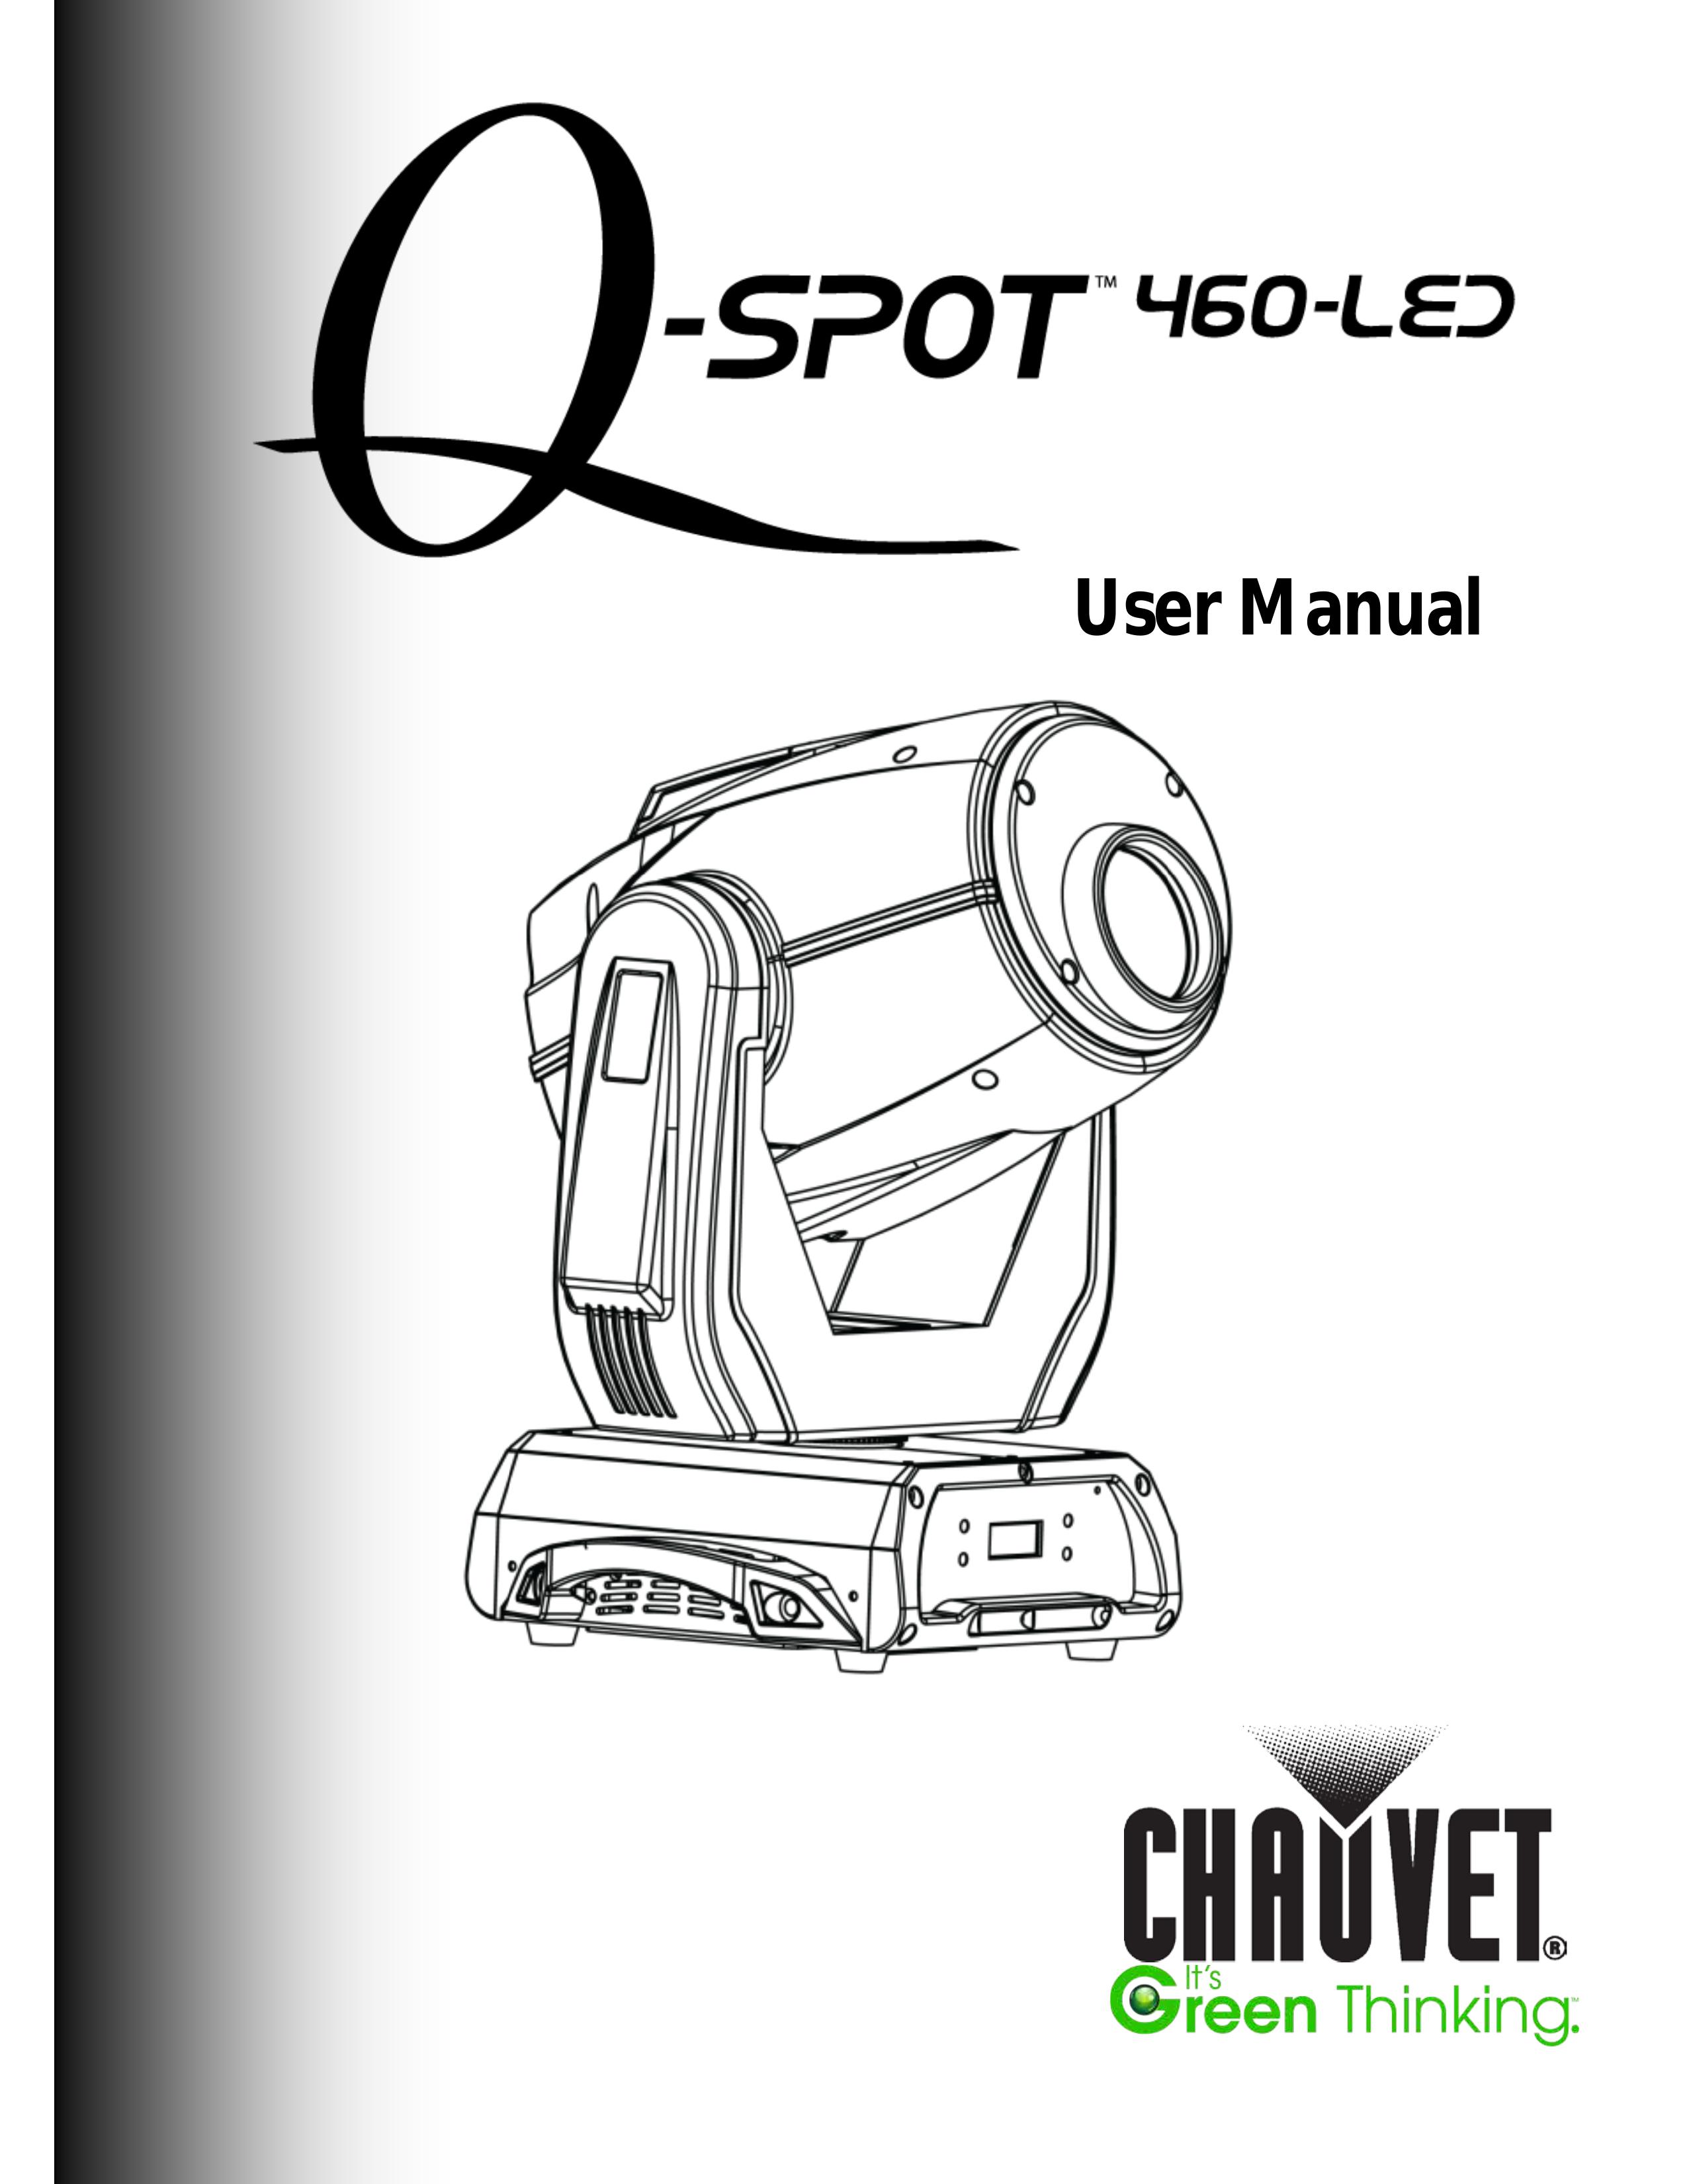 Chauvet 460-LED Landscape Lighting User Manual